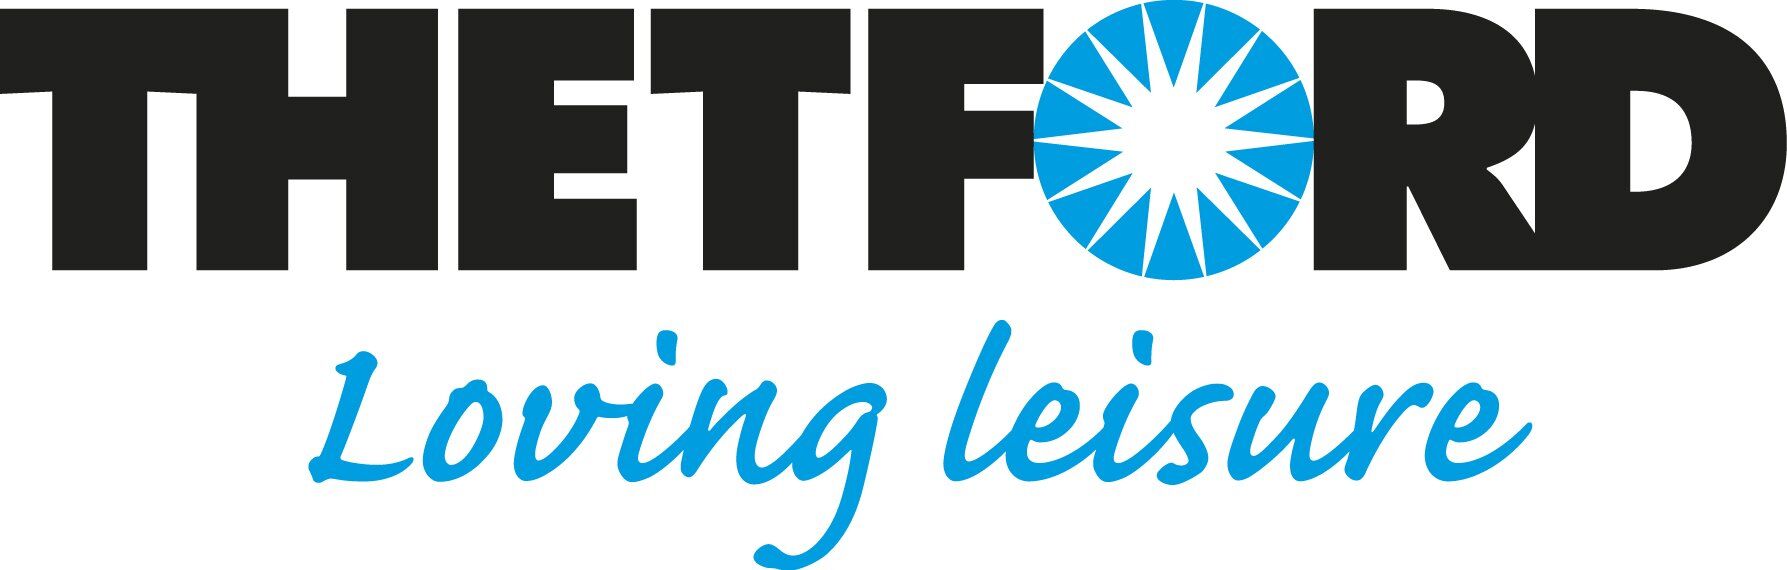 Thetford_large_logo